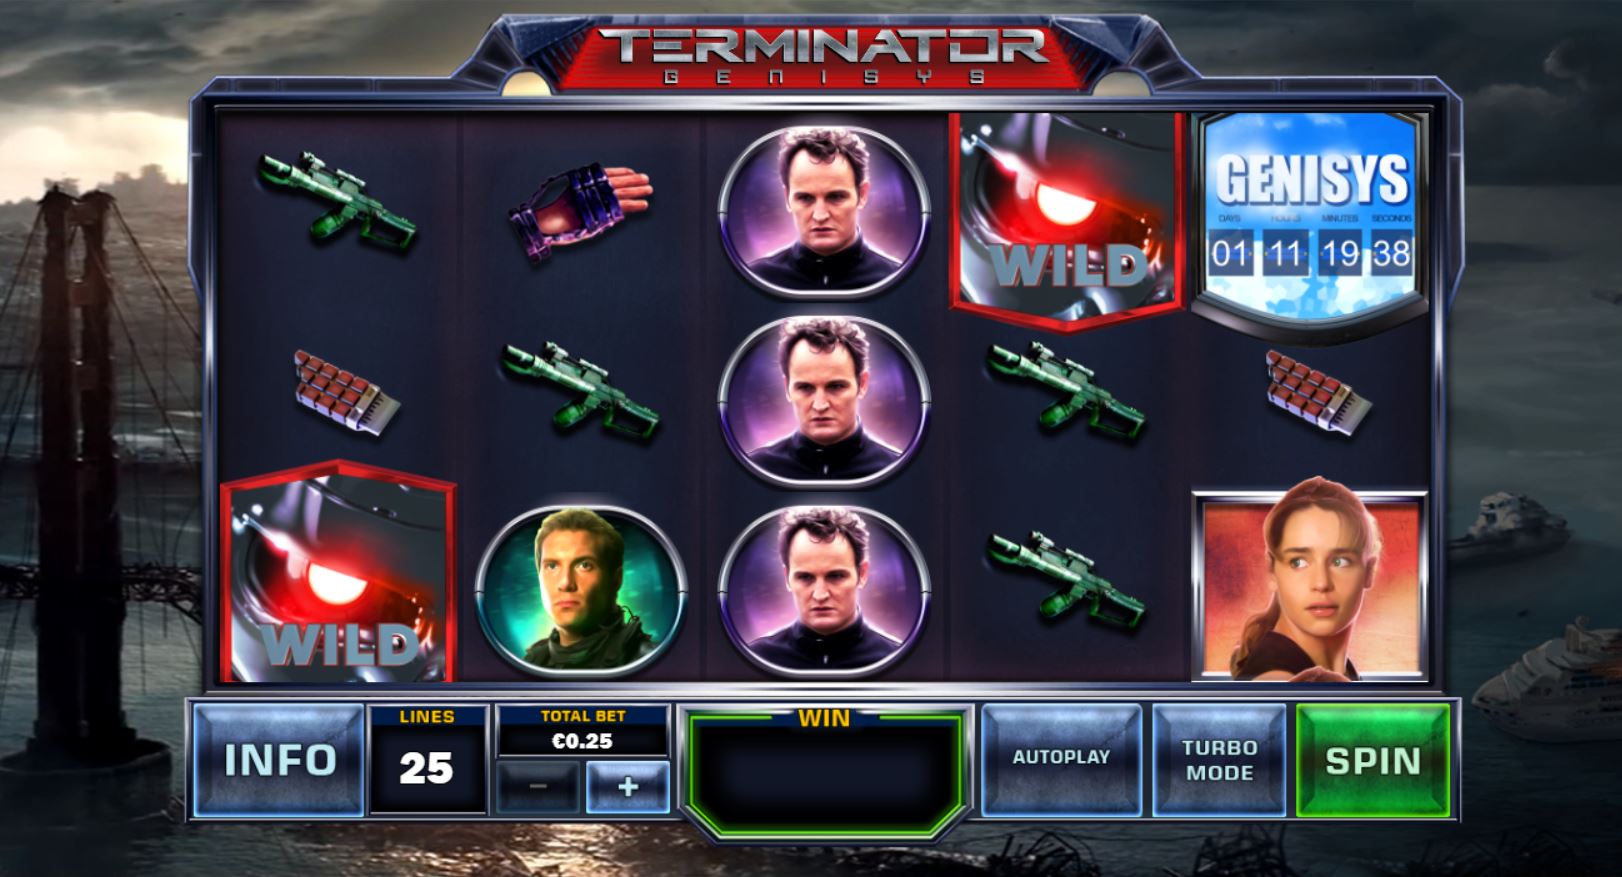 Bonus Game and Big Win Terminator Genisys Slot Machine from Playtech